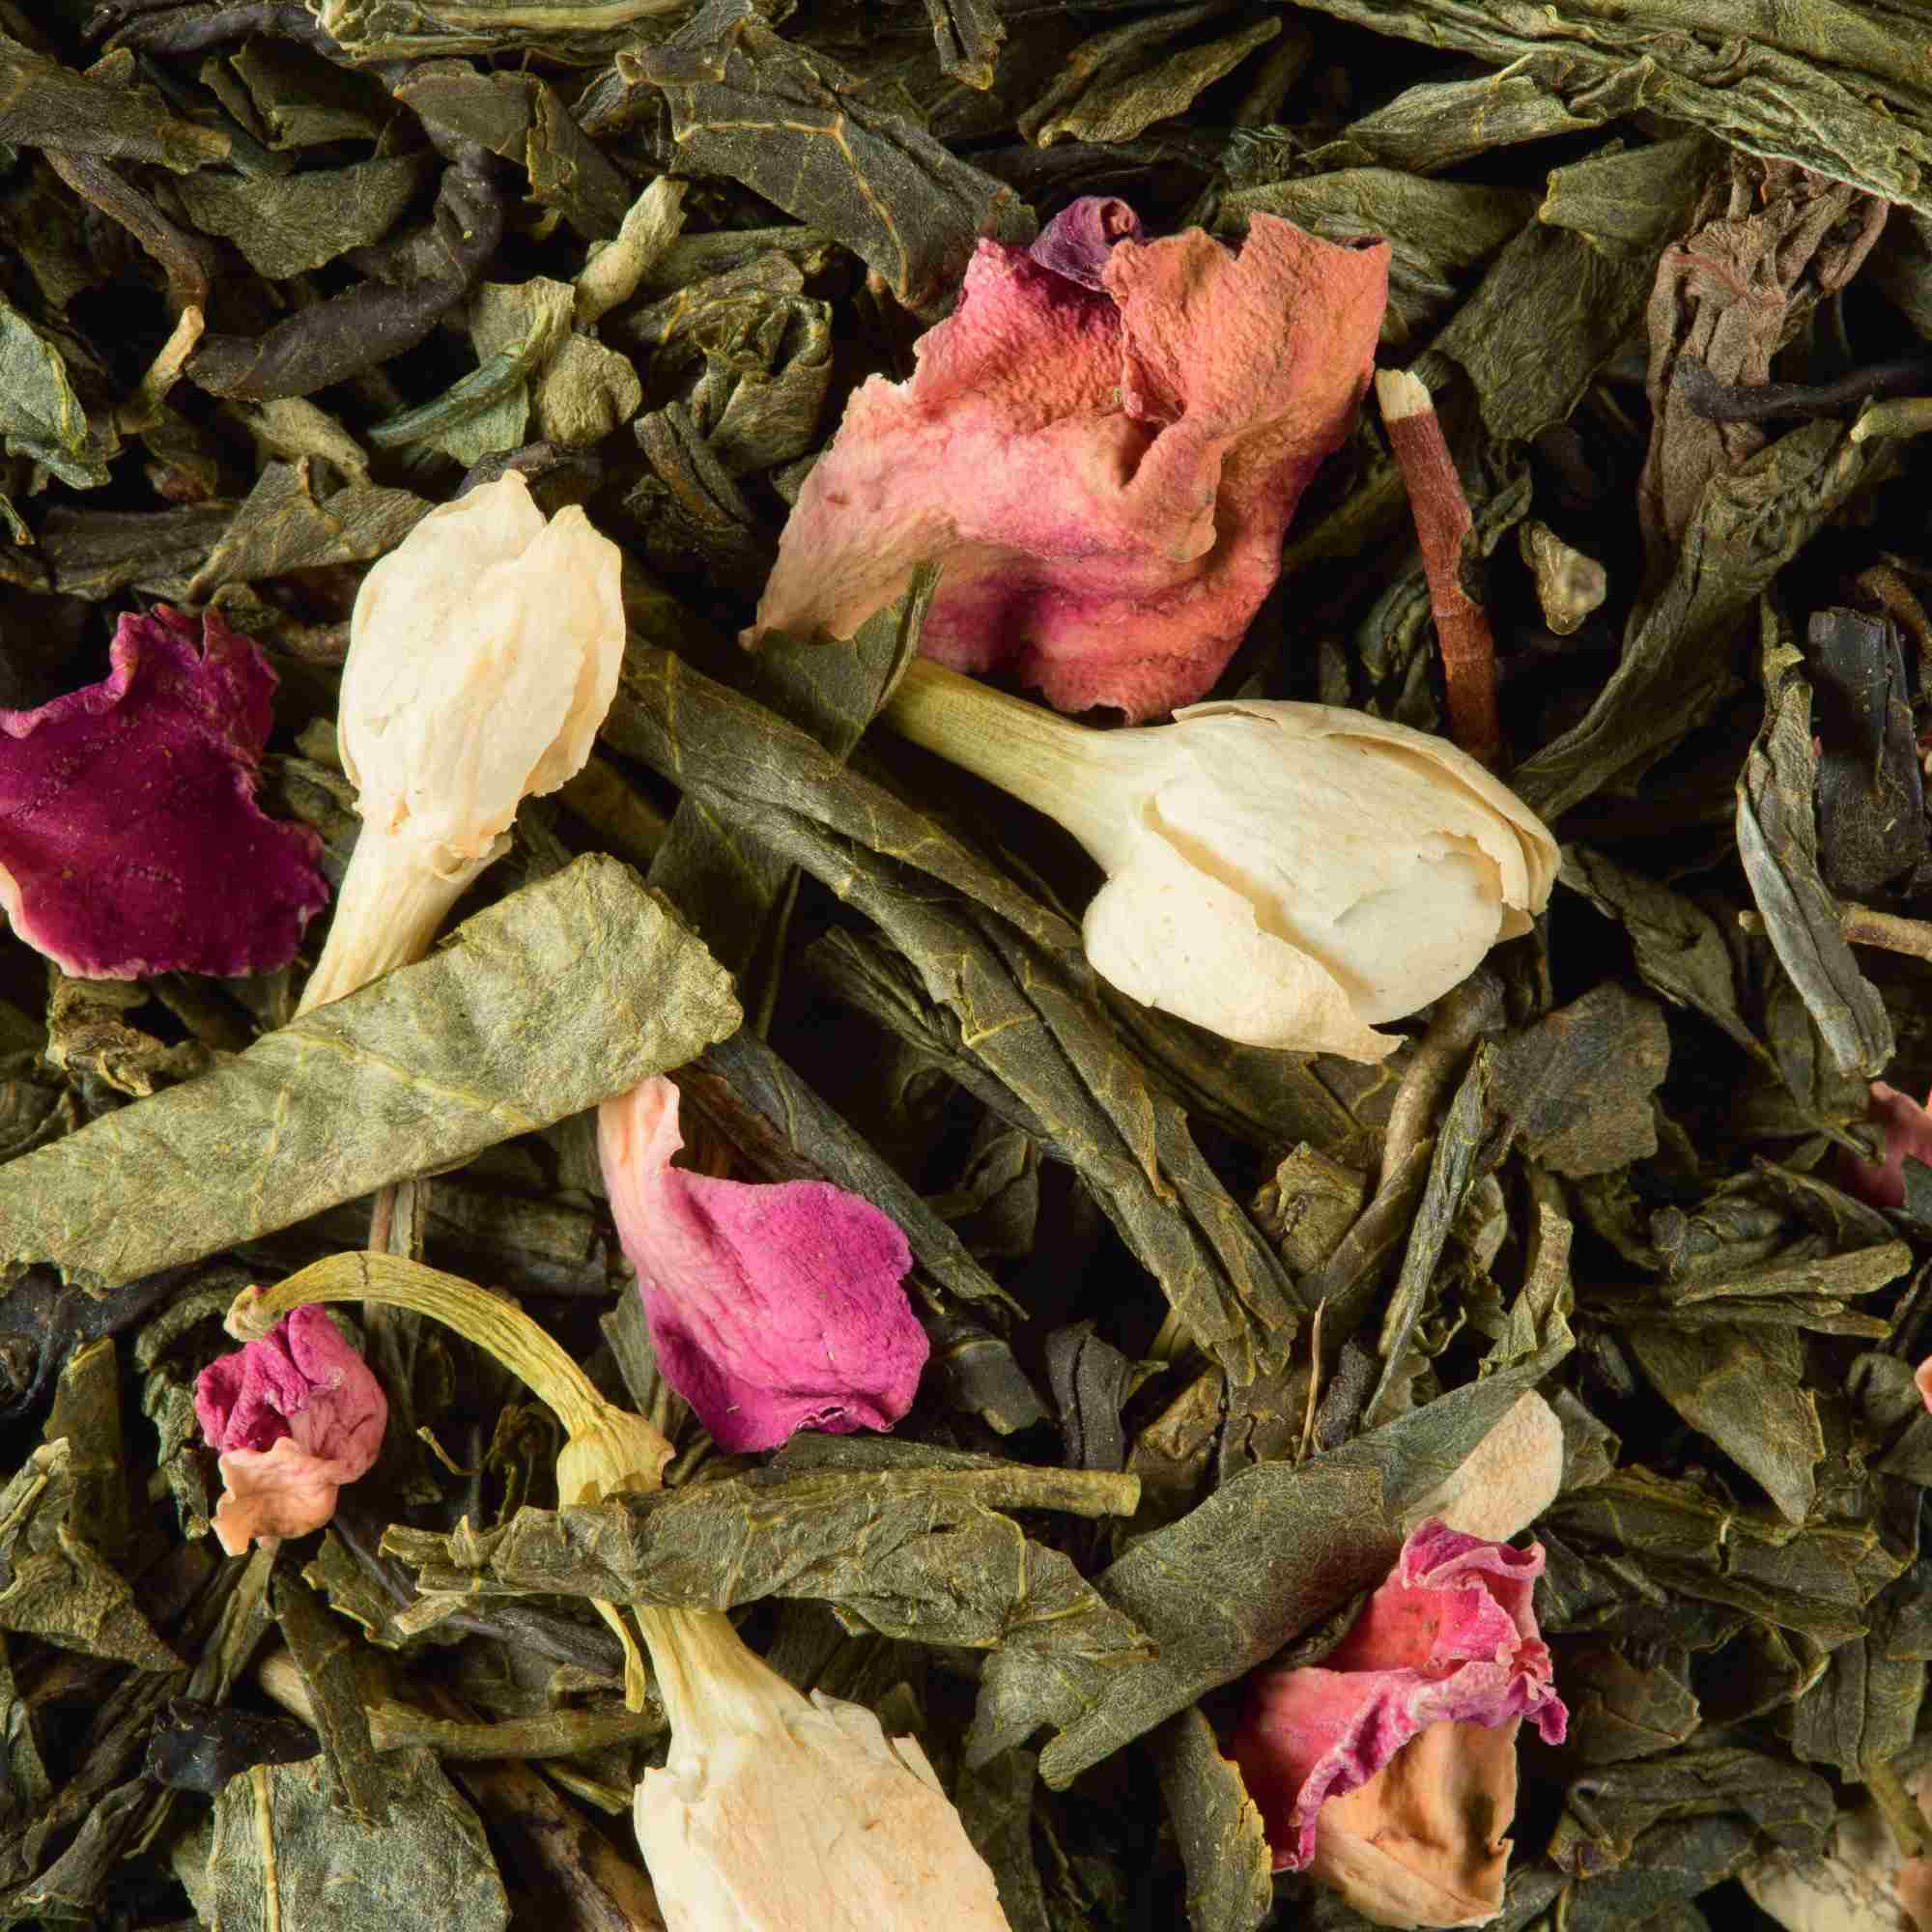 Dammann Tea Bali 24 Cristal® tea bags, Green Flavored Tea, 18-20-0110